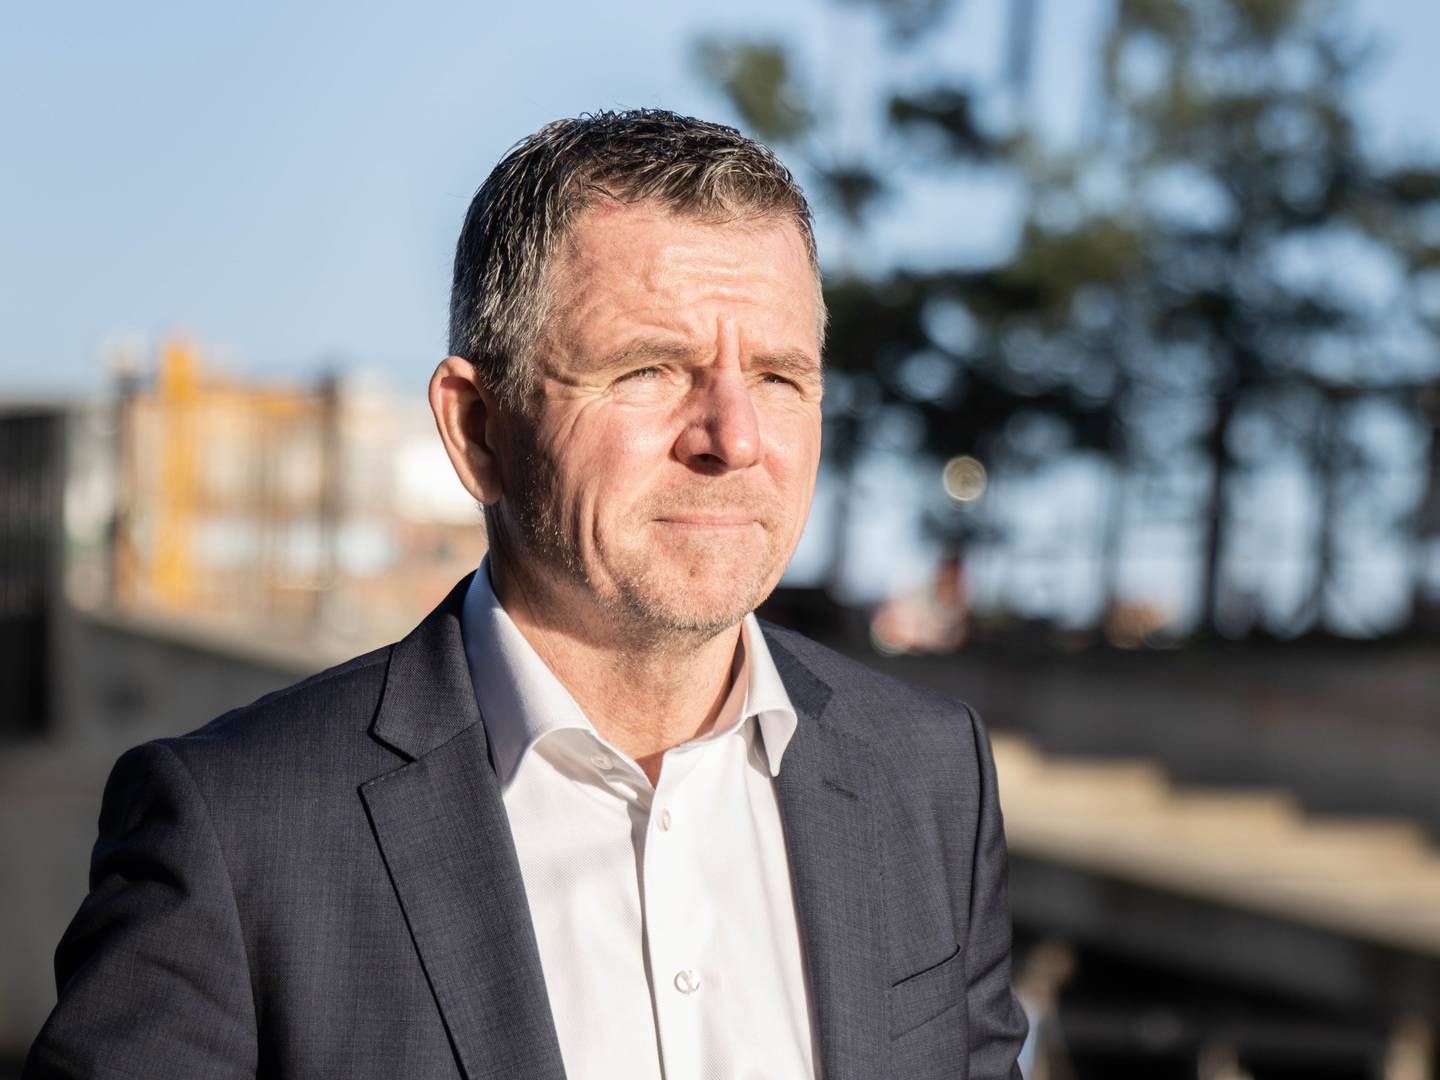 Henrik Dahl Jeppesen, CEO, PKA Ejendomme. | Photo: David Engstrøm